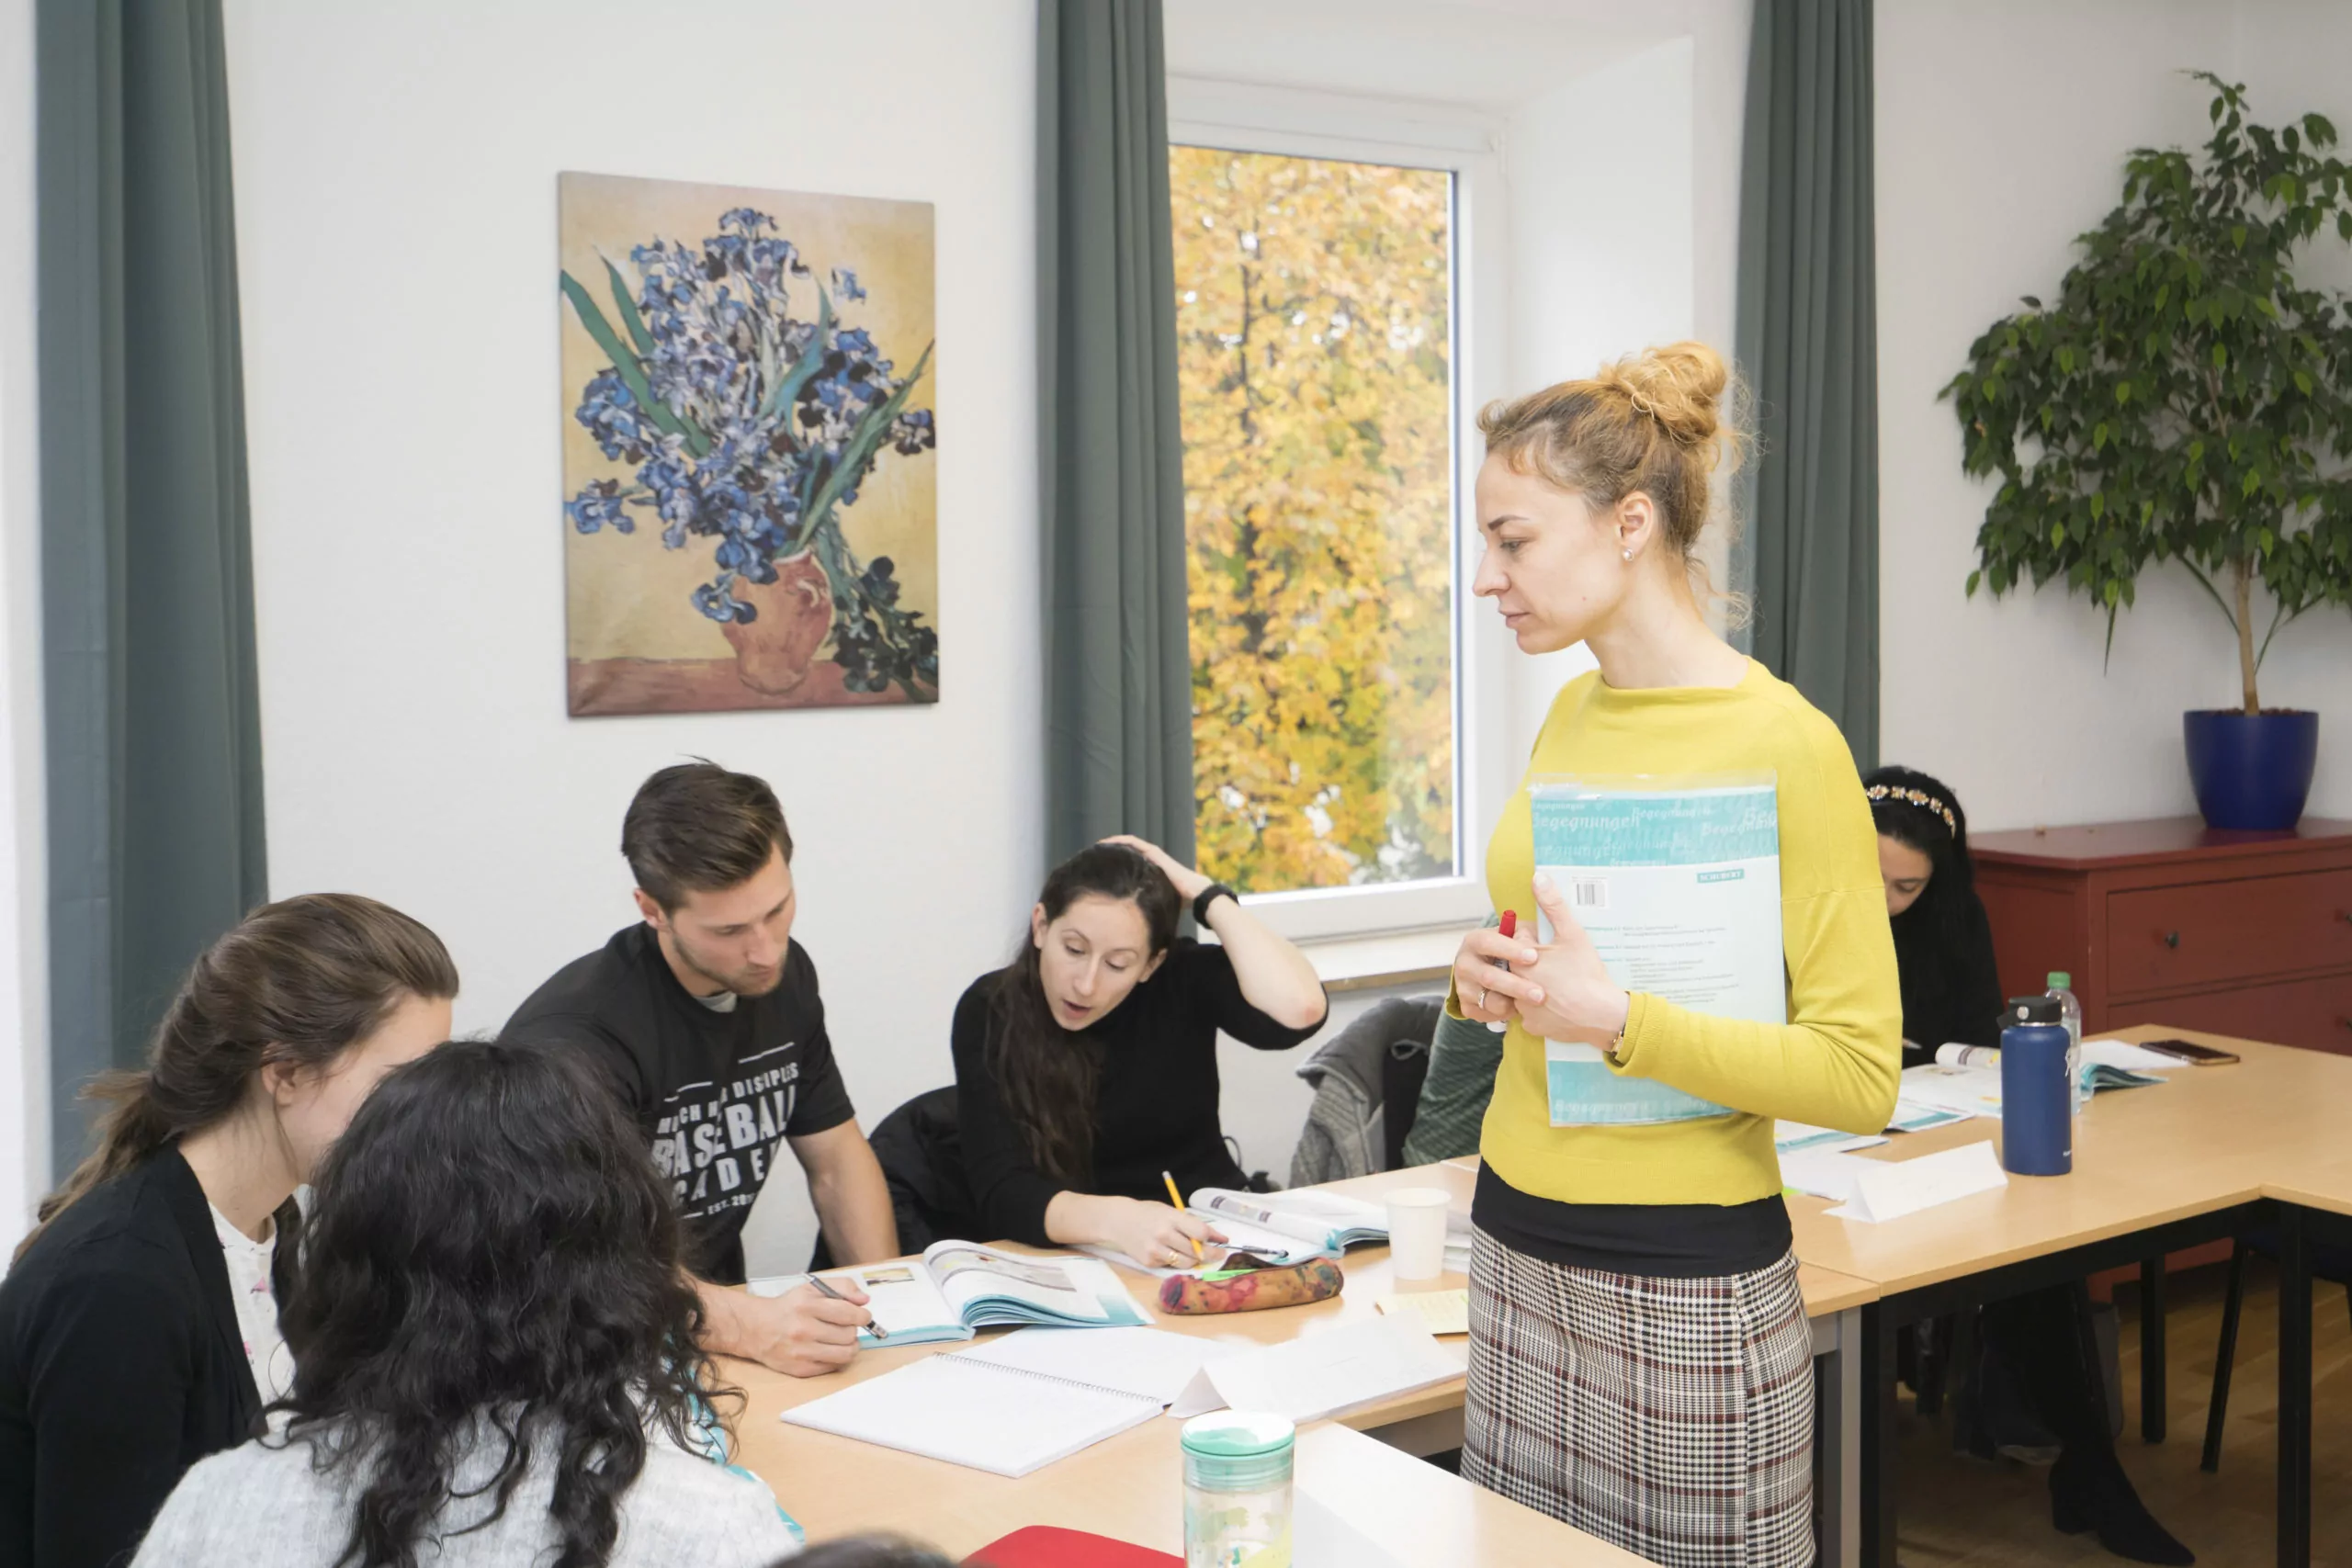 Sprachschule in Oerlikon - Sprachkurse für Deutsch, Englisch, Spanisch